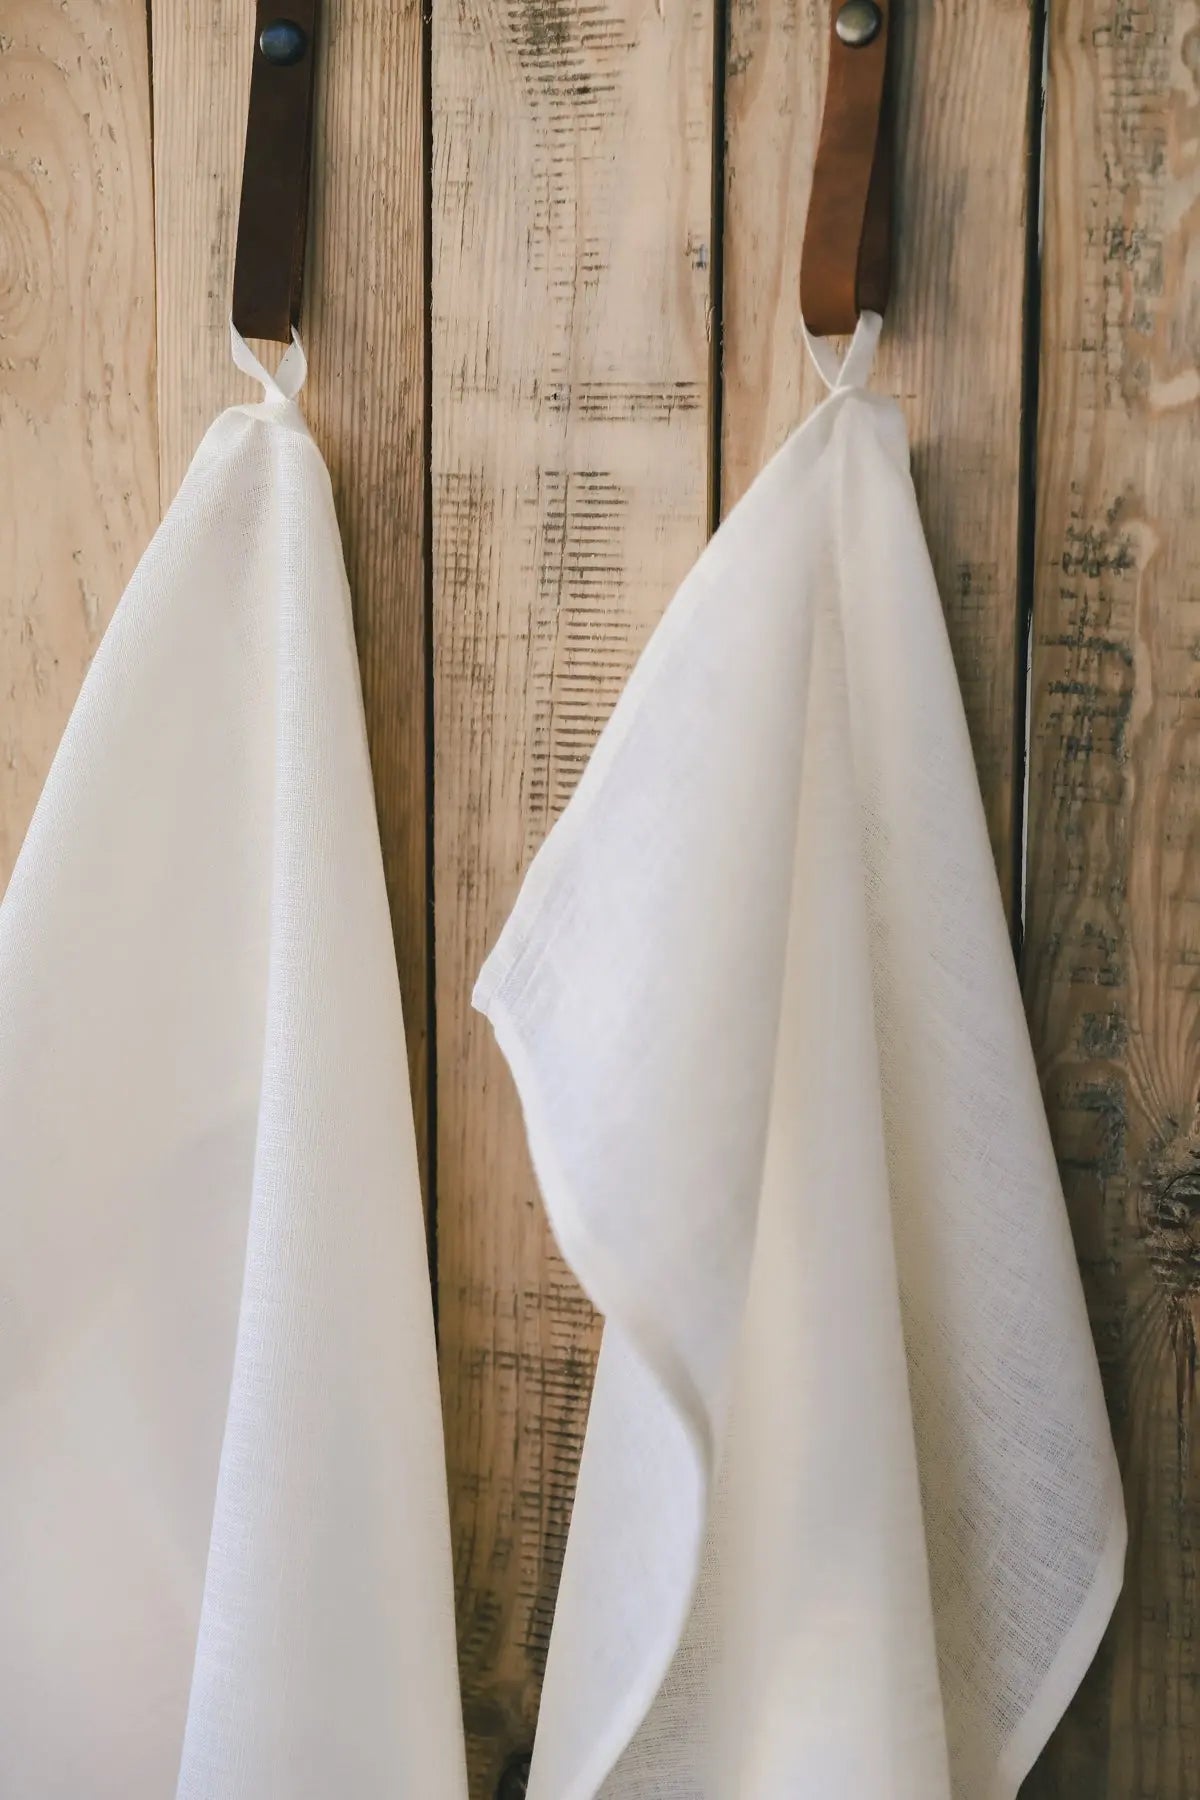 100 % Pure Plain Natural Off-White Linen Kitchen Tea Towels x 2 - Epic Linen luxury linen